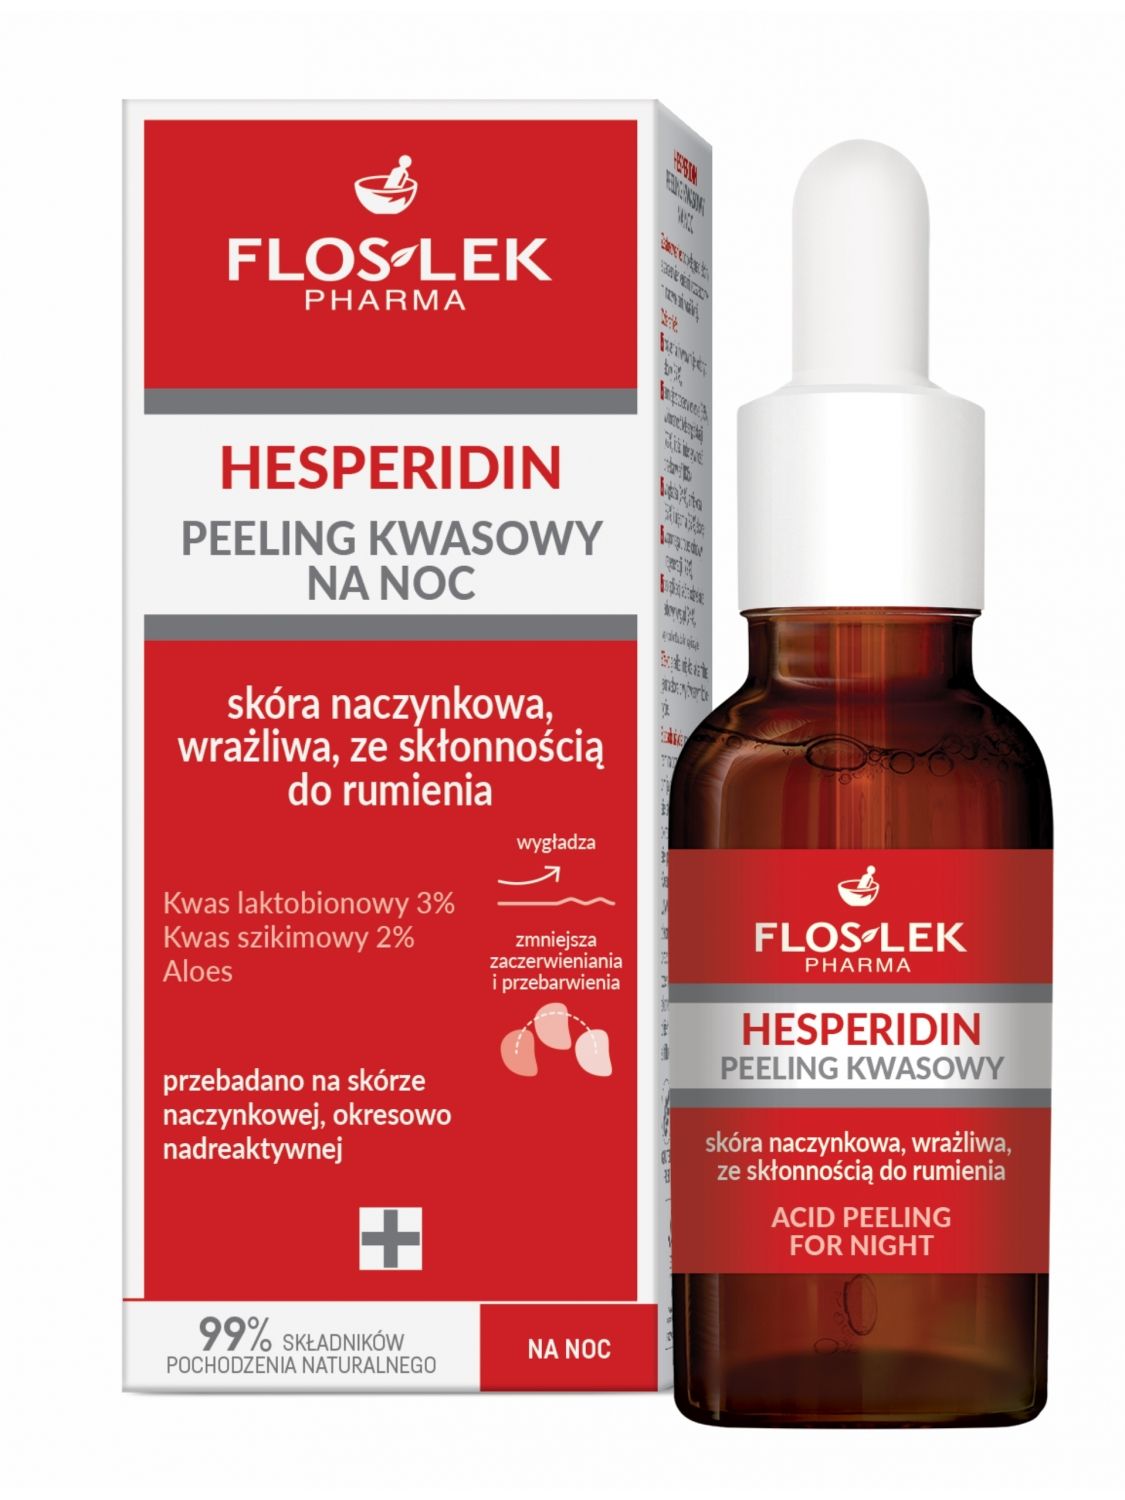 HESPERIDIN Acid peeling for night 30 ml - Floslek